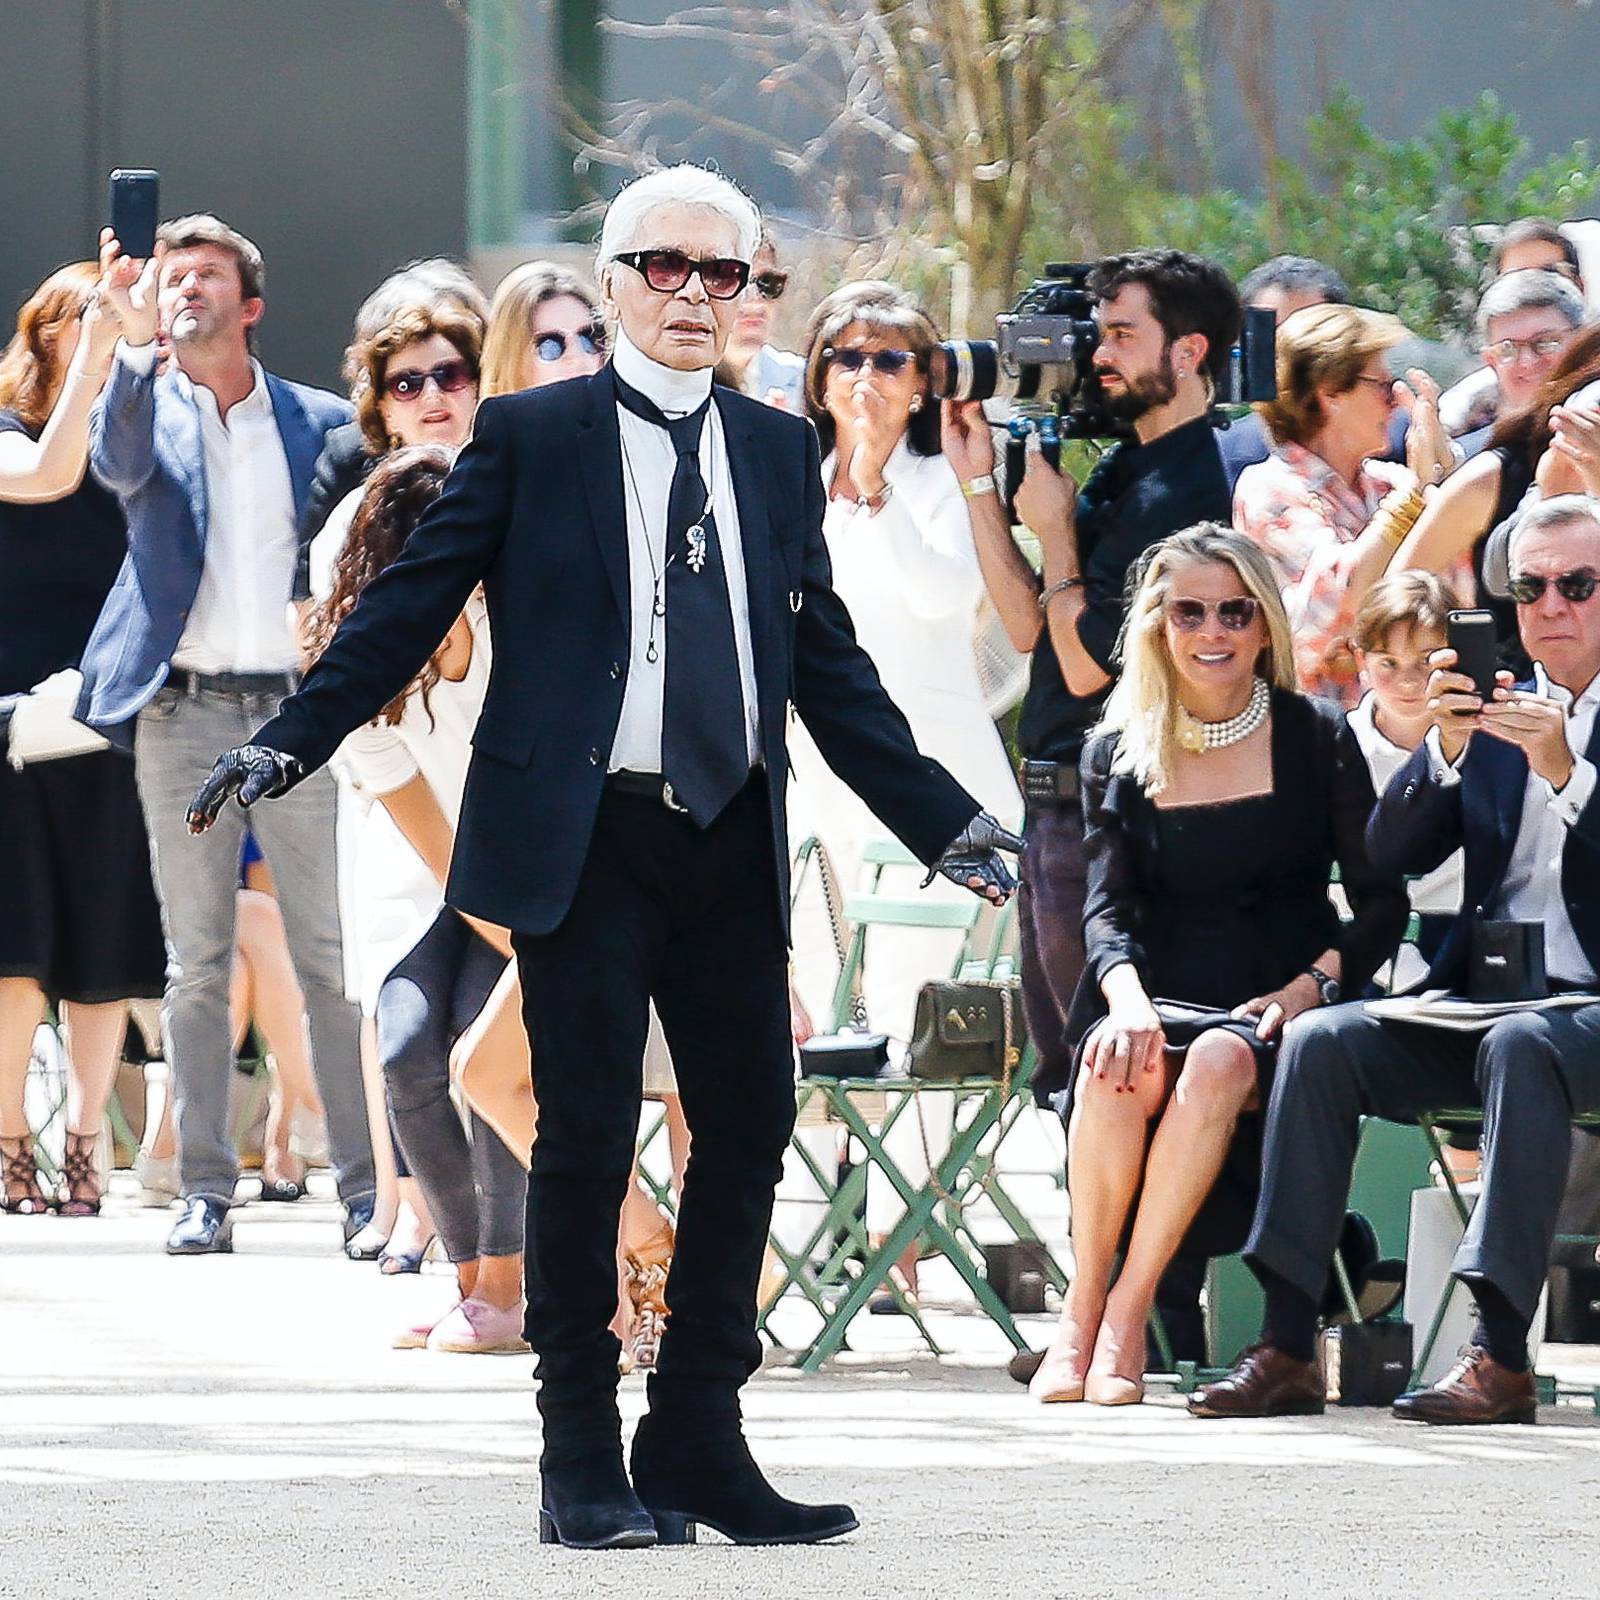 Karl Lagerfeld Dies in Paris